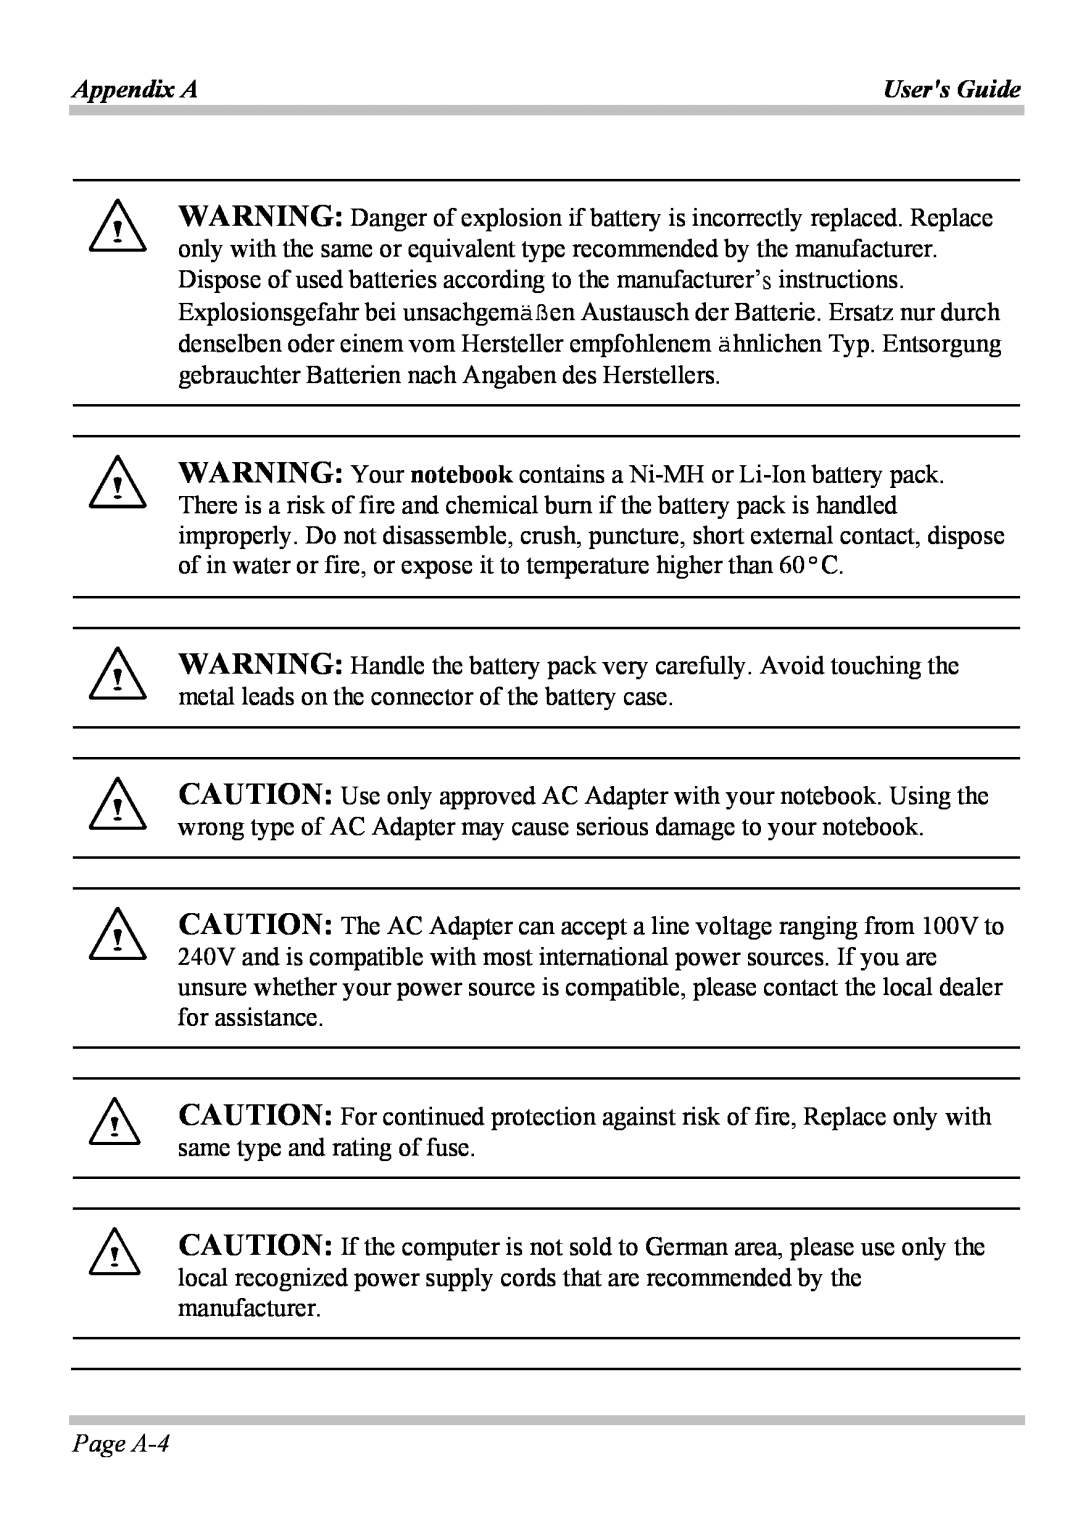 Microsoft W840DI manual Page A-4, Appendix A, Users Guide 